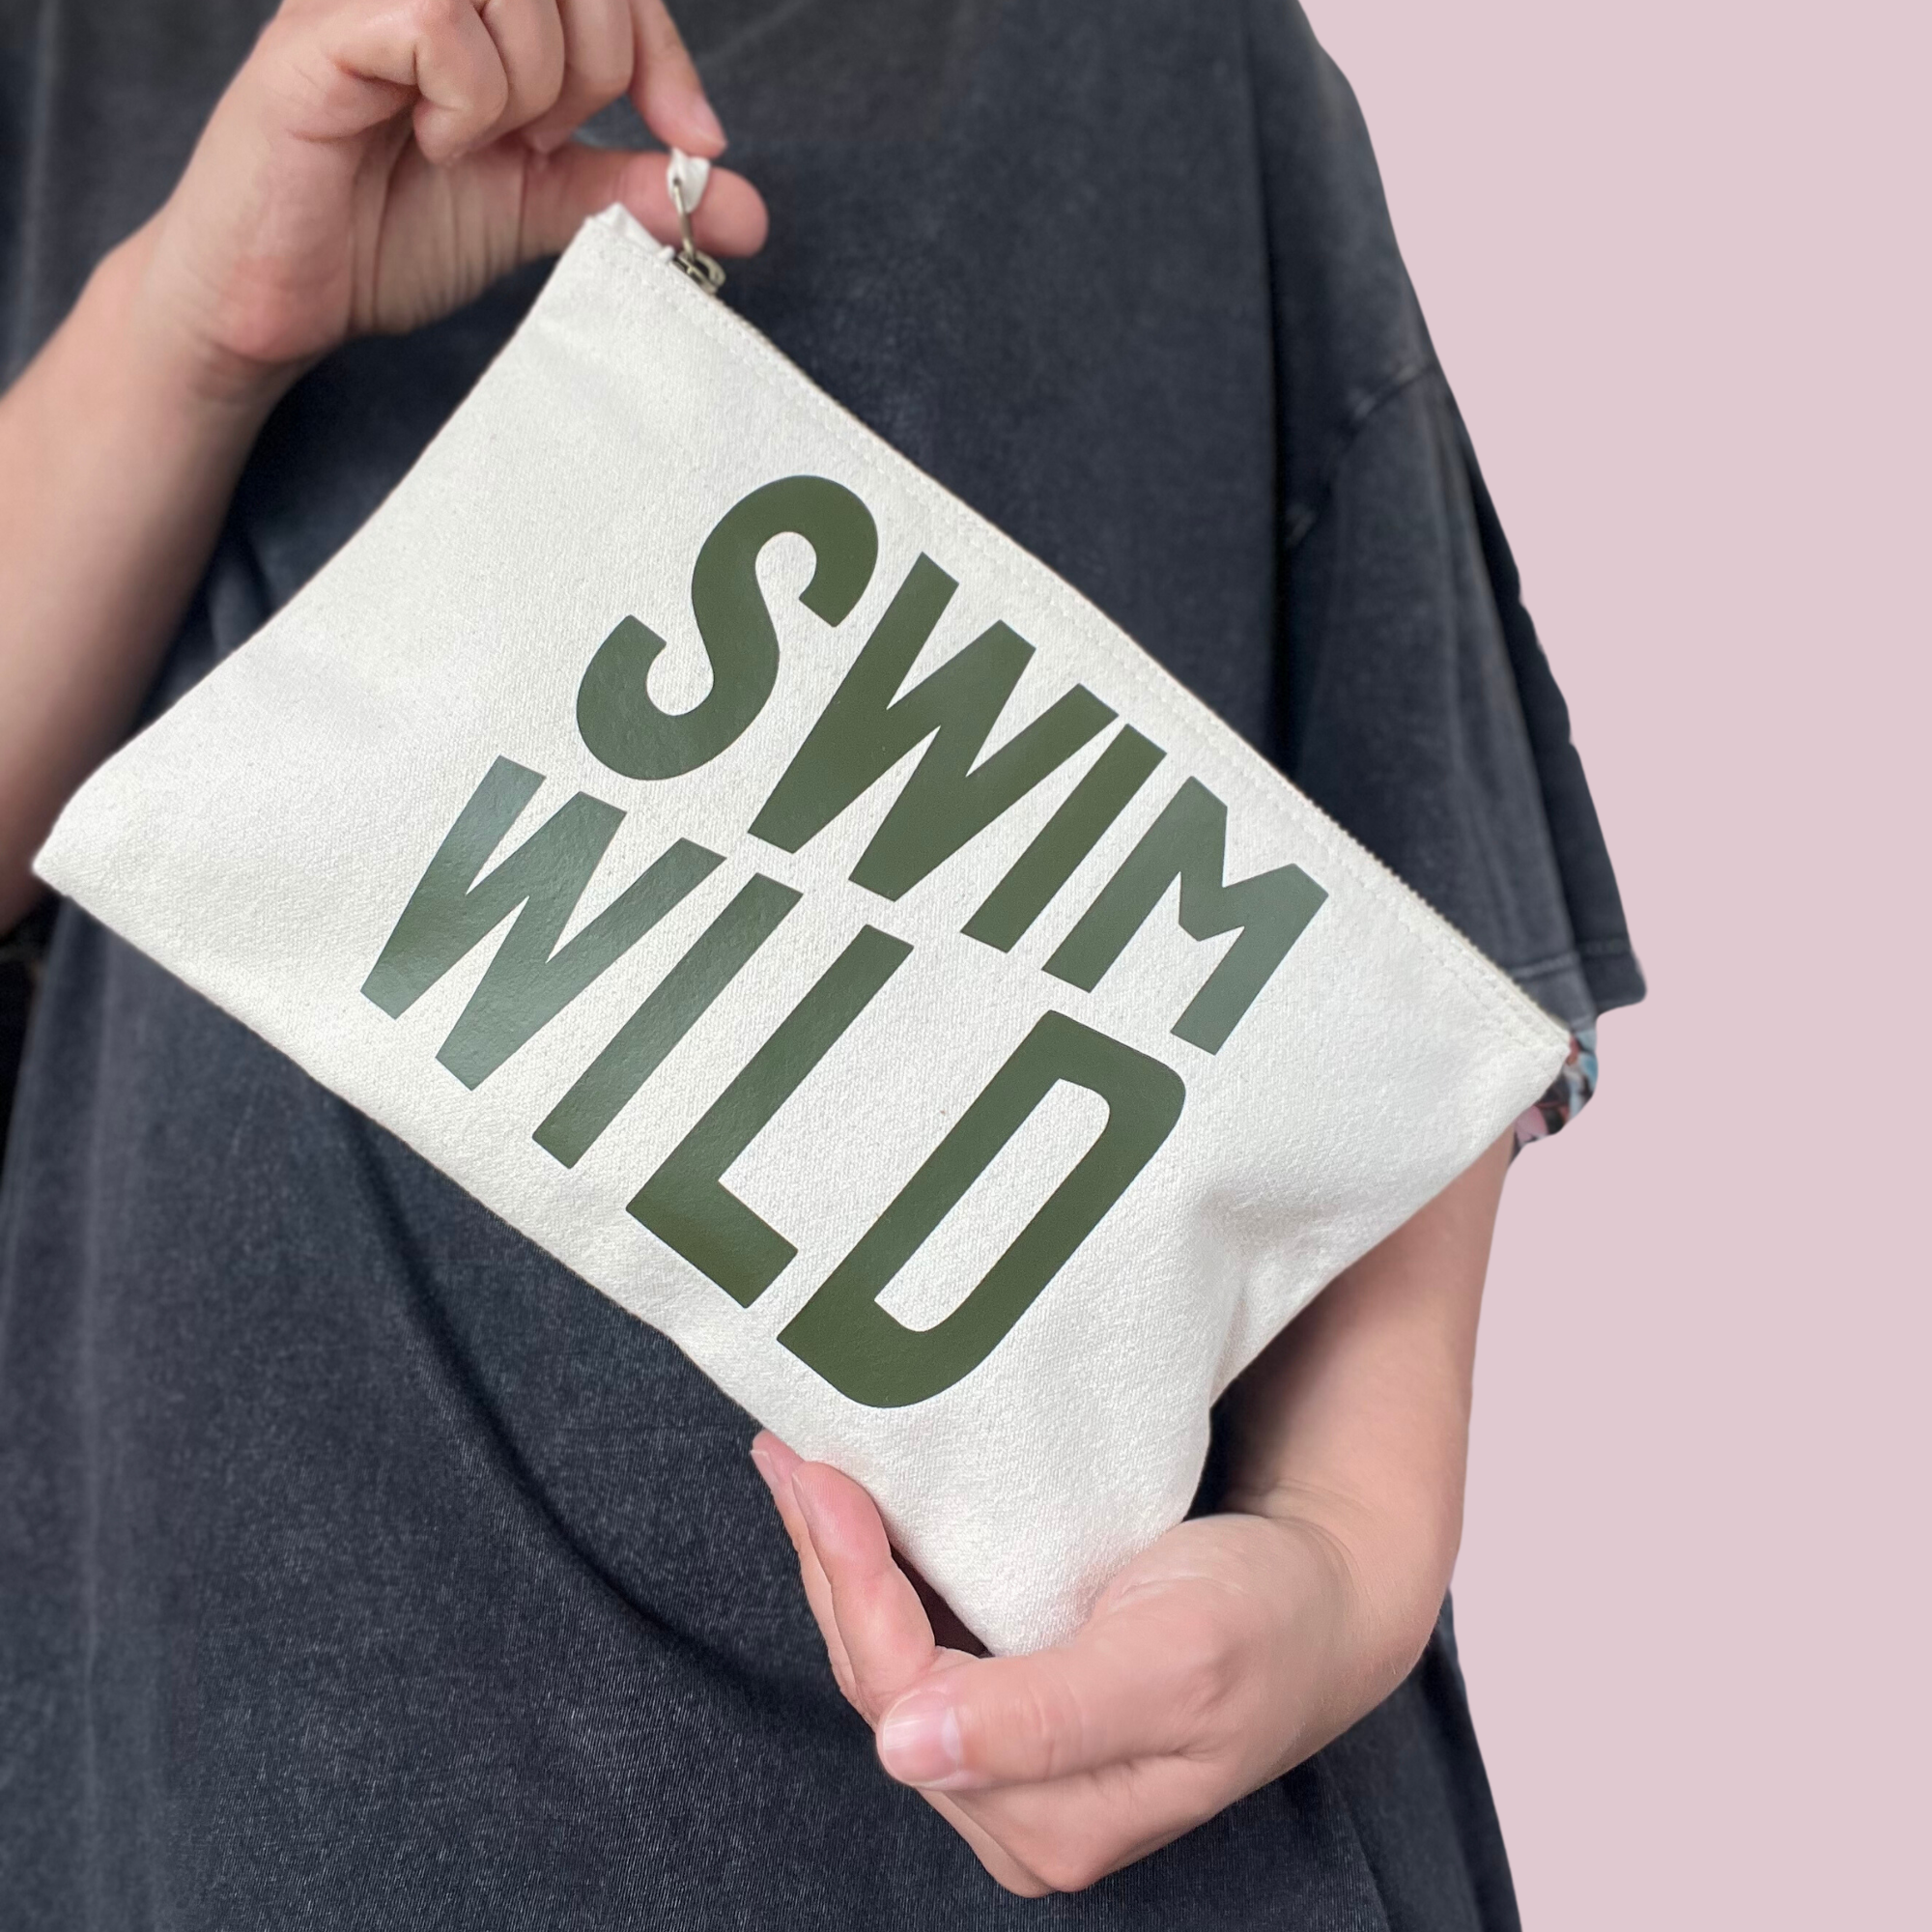 Swim Wild ZIP Bag |  Khaki